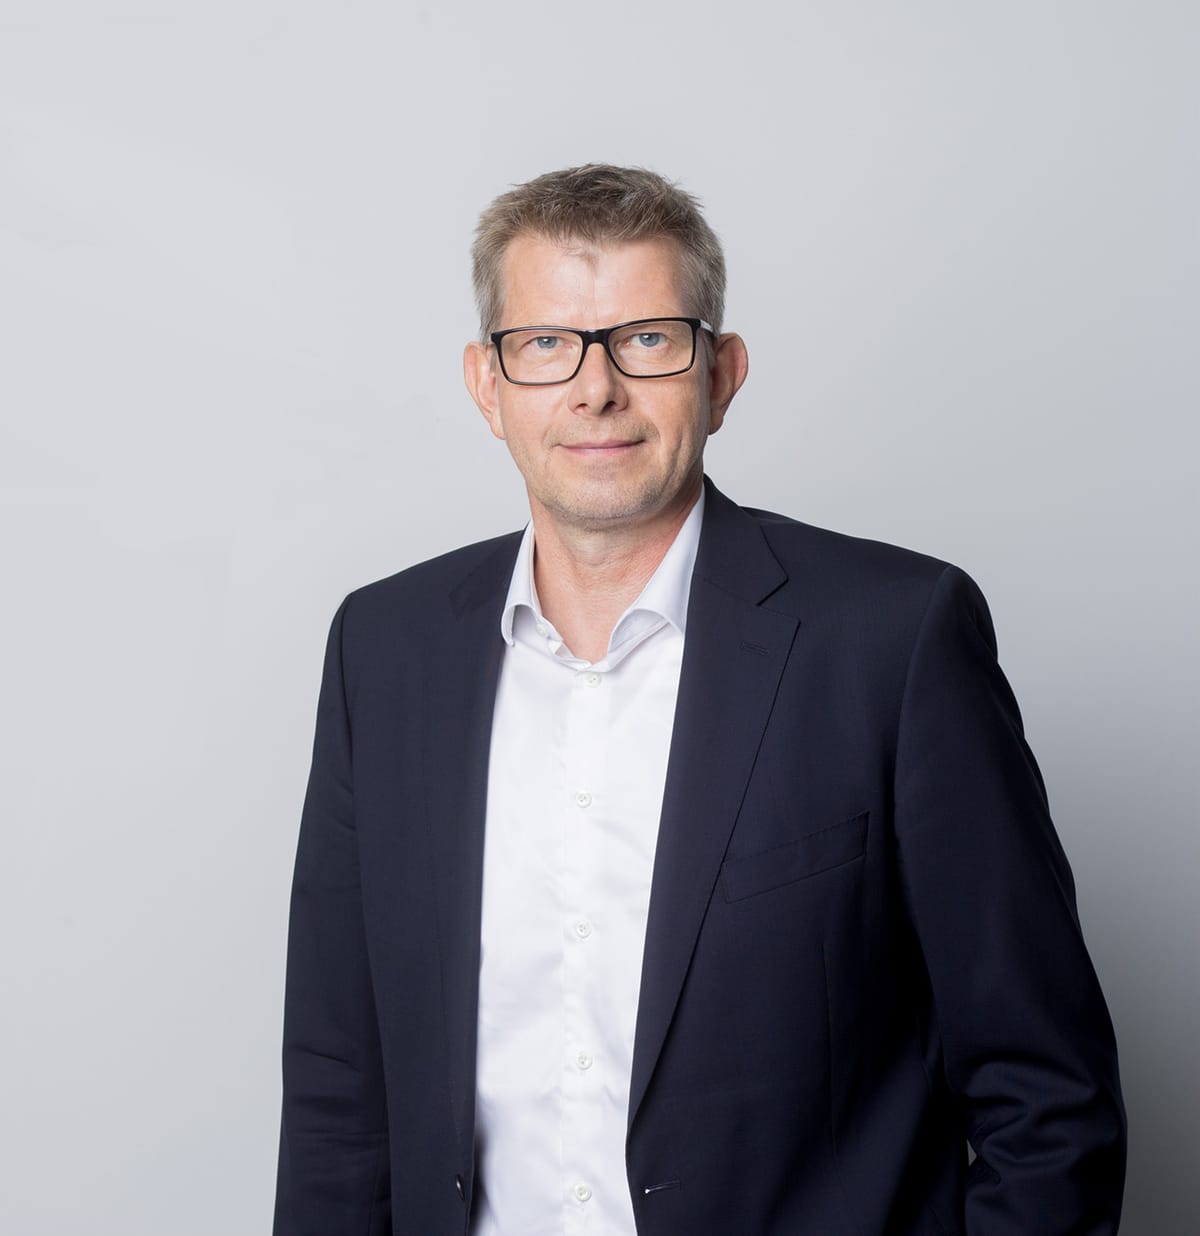 Thorsten Dirks to leave Lufthansa